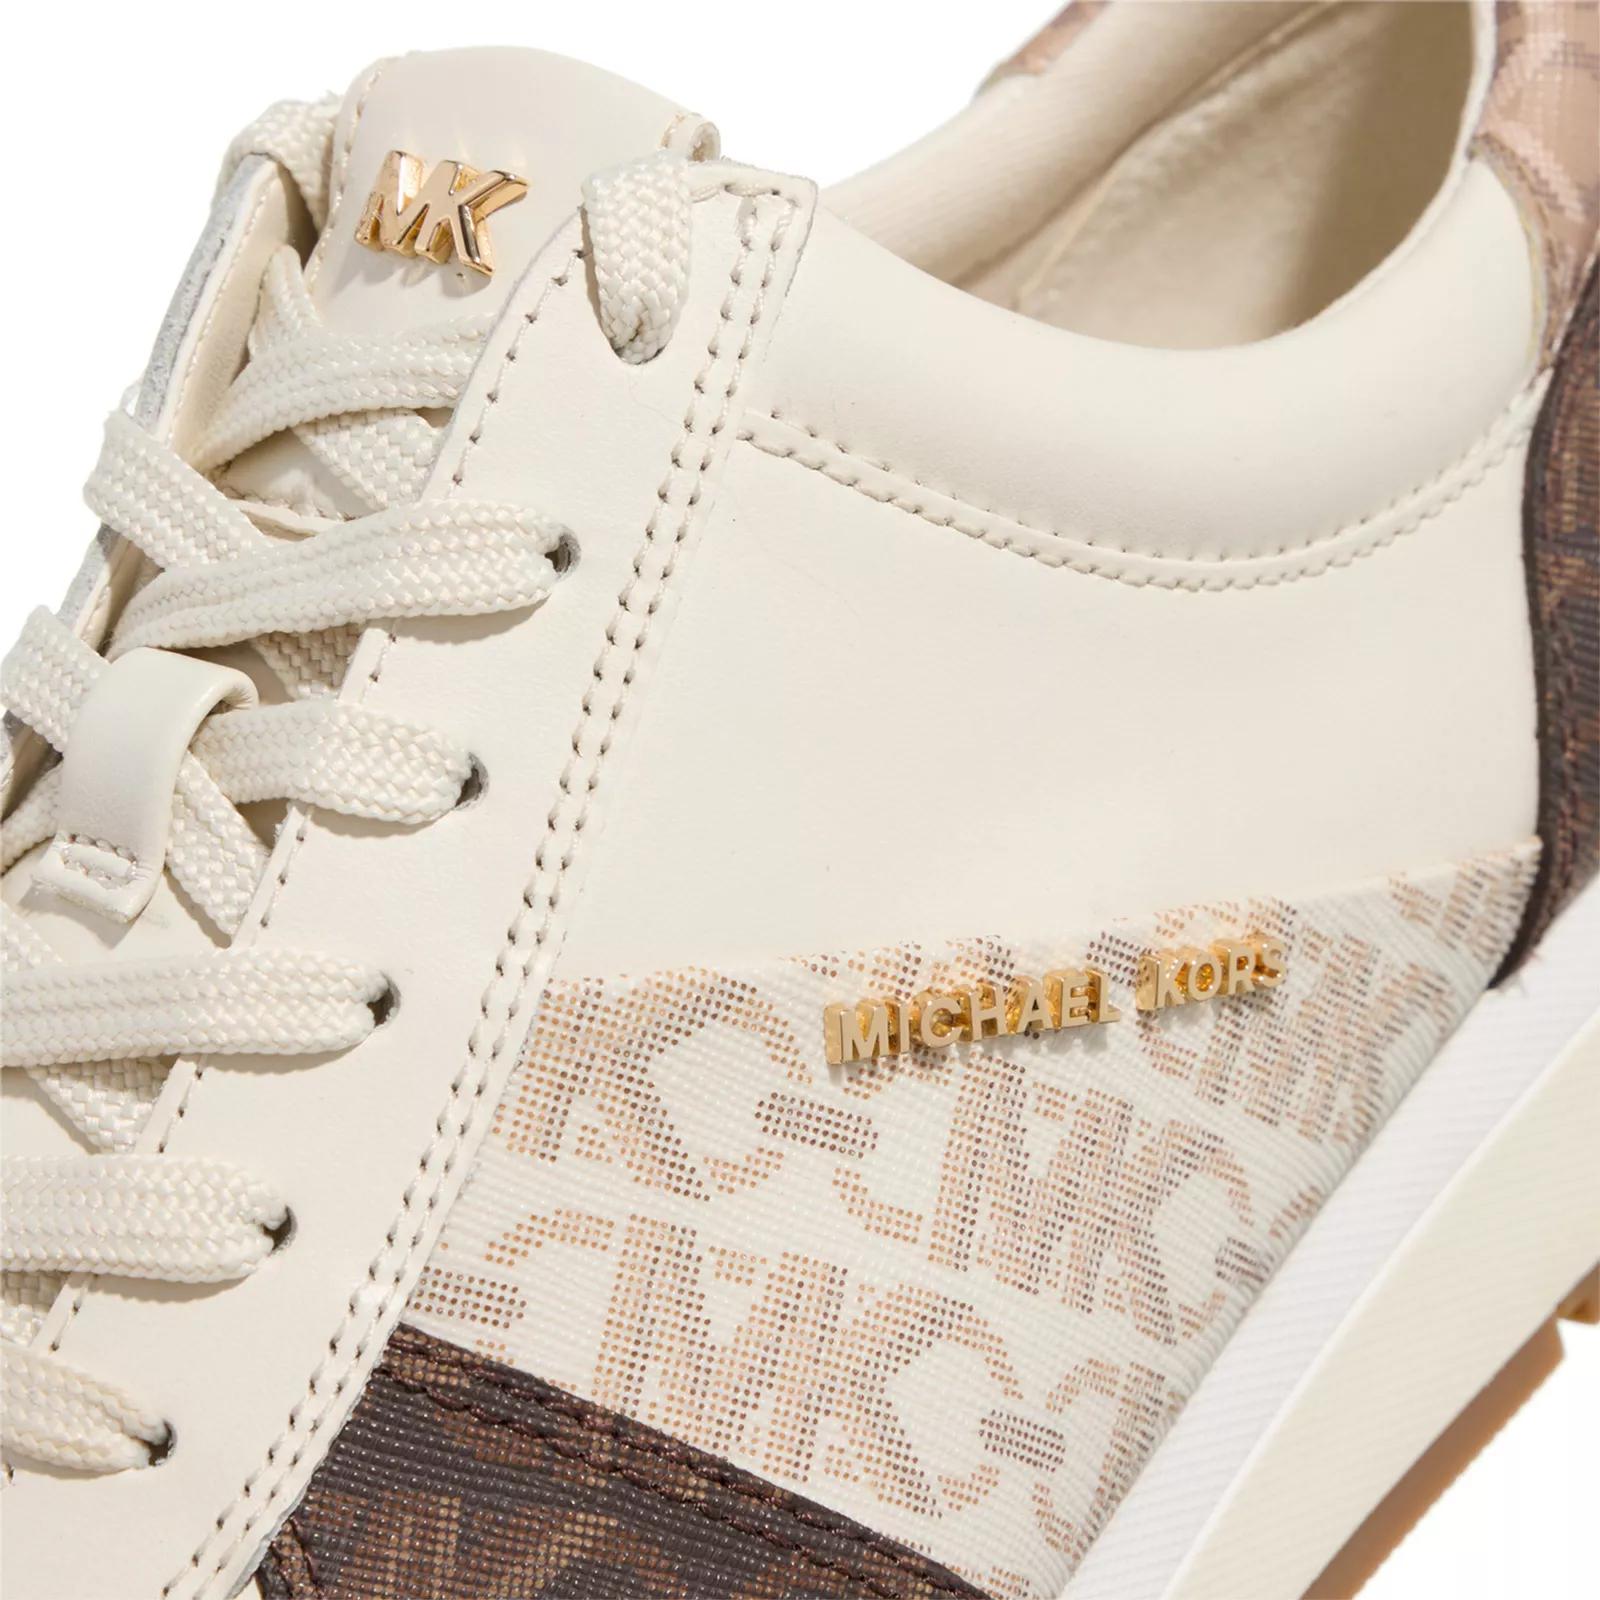 Michael Kors Sneakers - Allie Trainer - Gr. 40 (EU) - in Creme - für Damen von Michael Kors